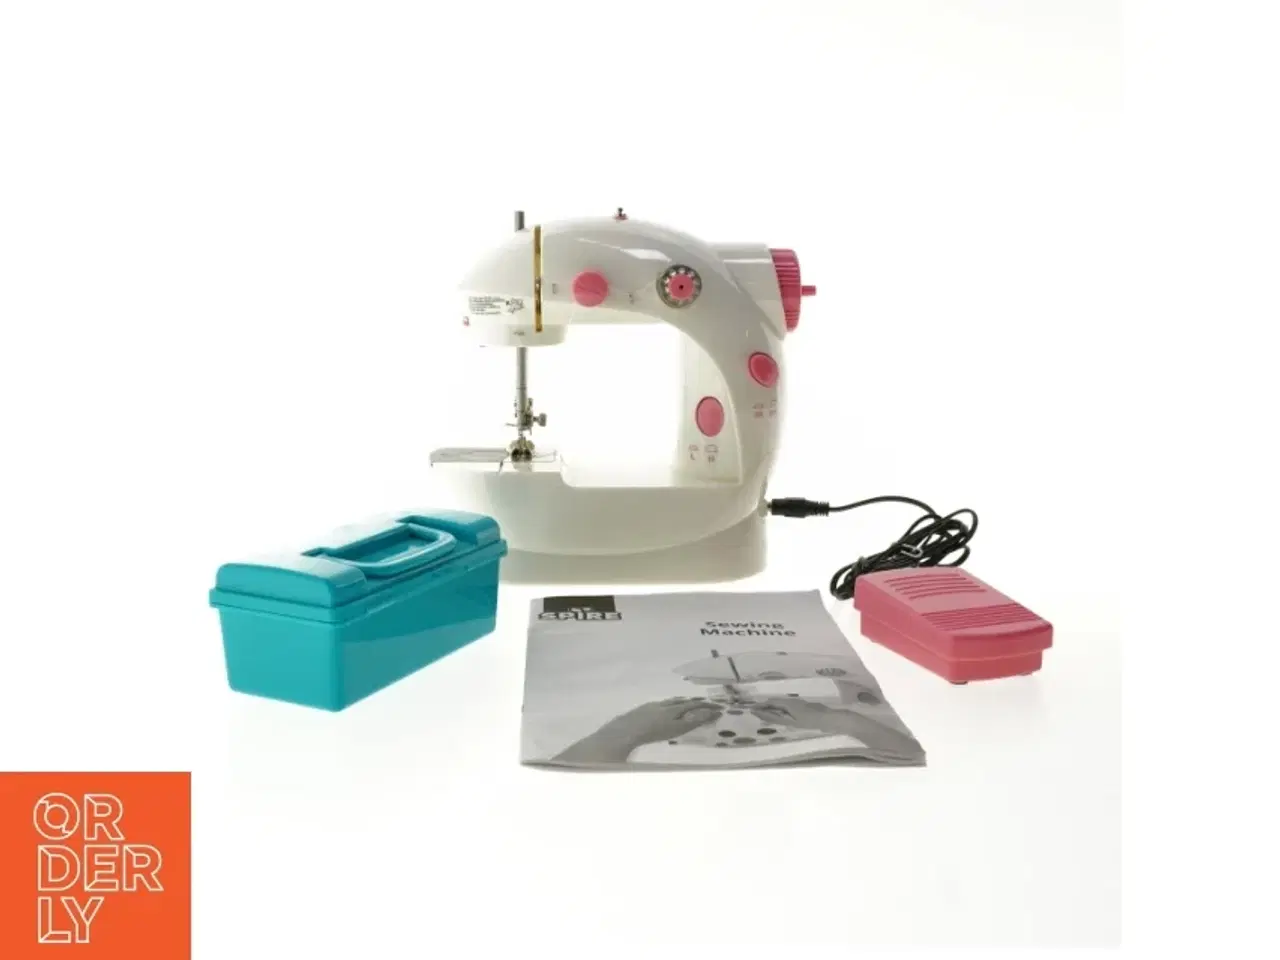 Billede 1 - Lille symaskine til børn fra Spire (str. 16 x 9 x 16 cm)